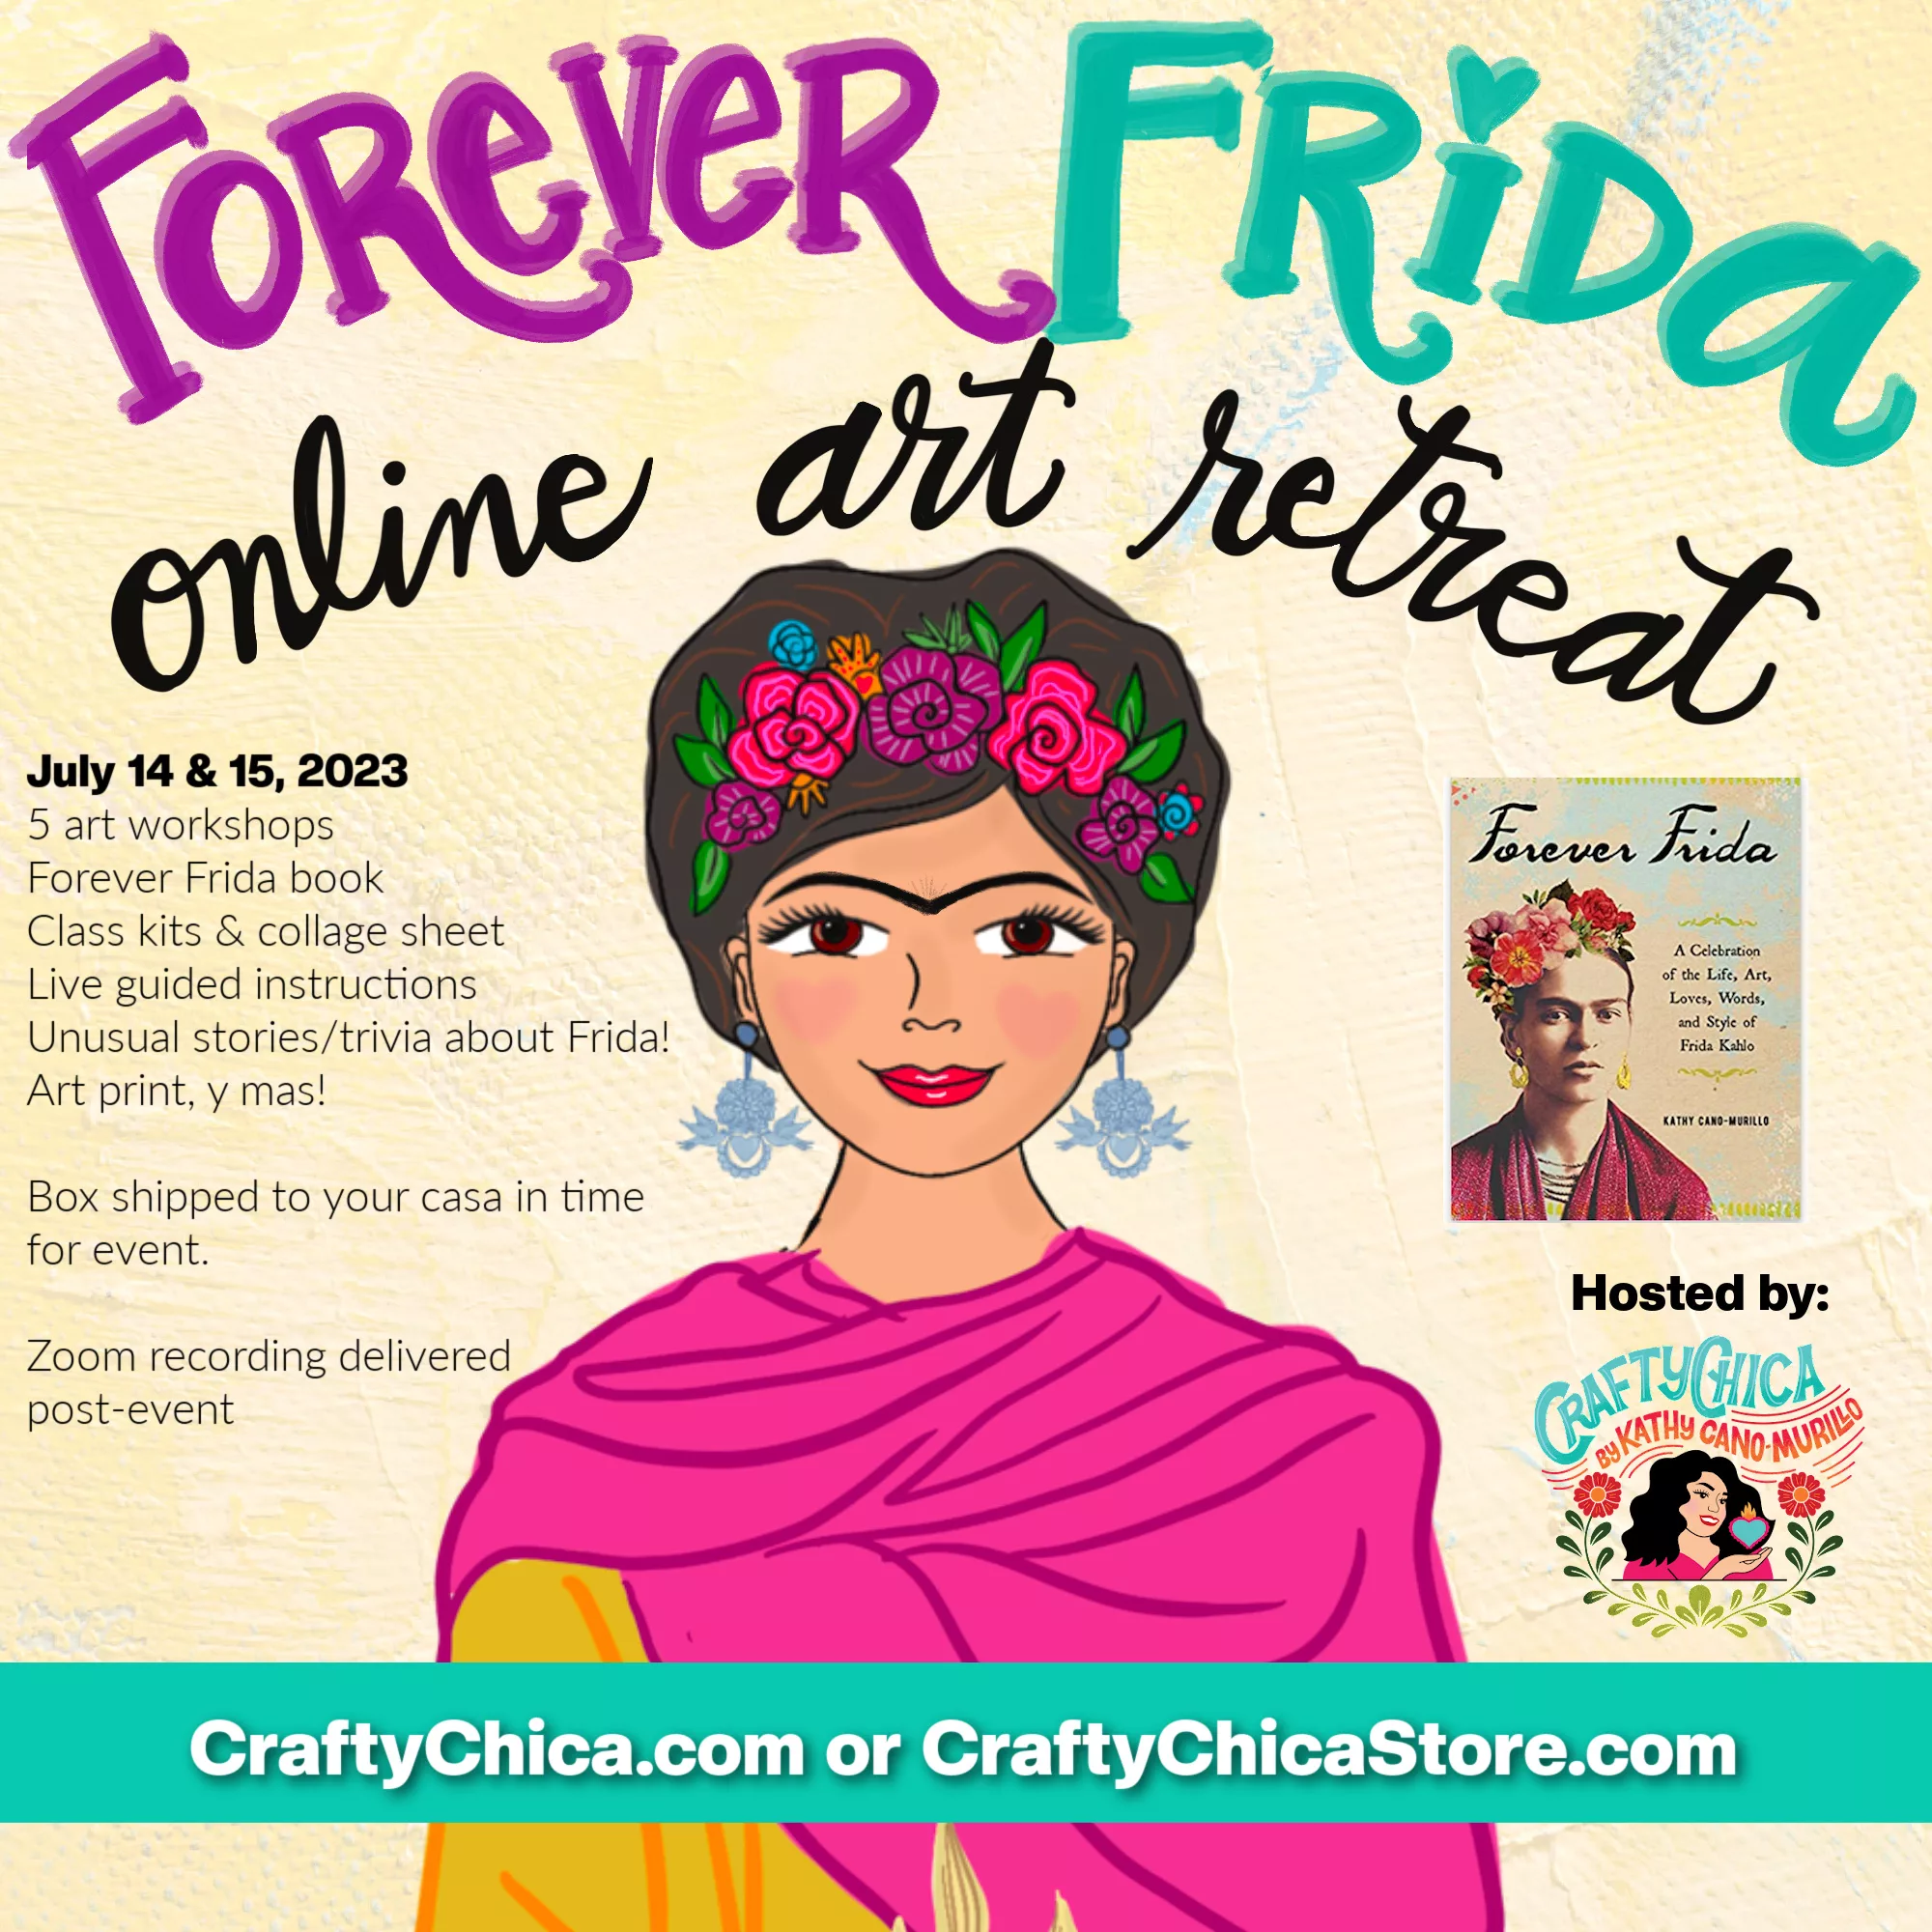 Forever Frida online retreat